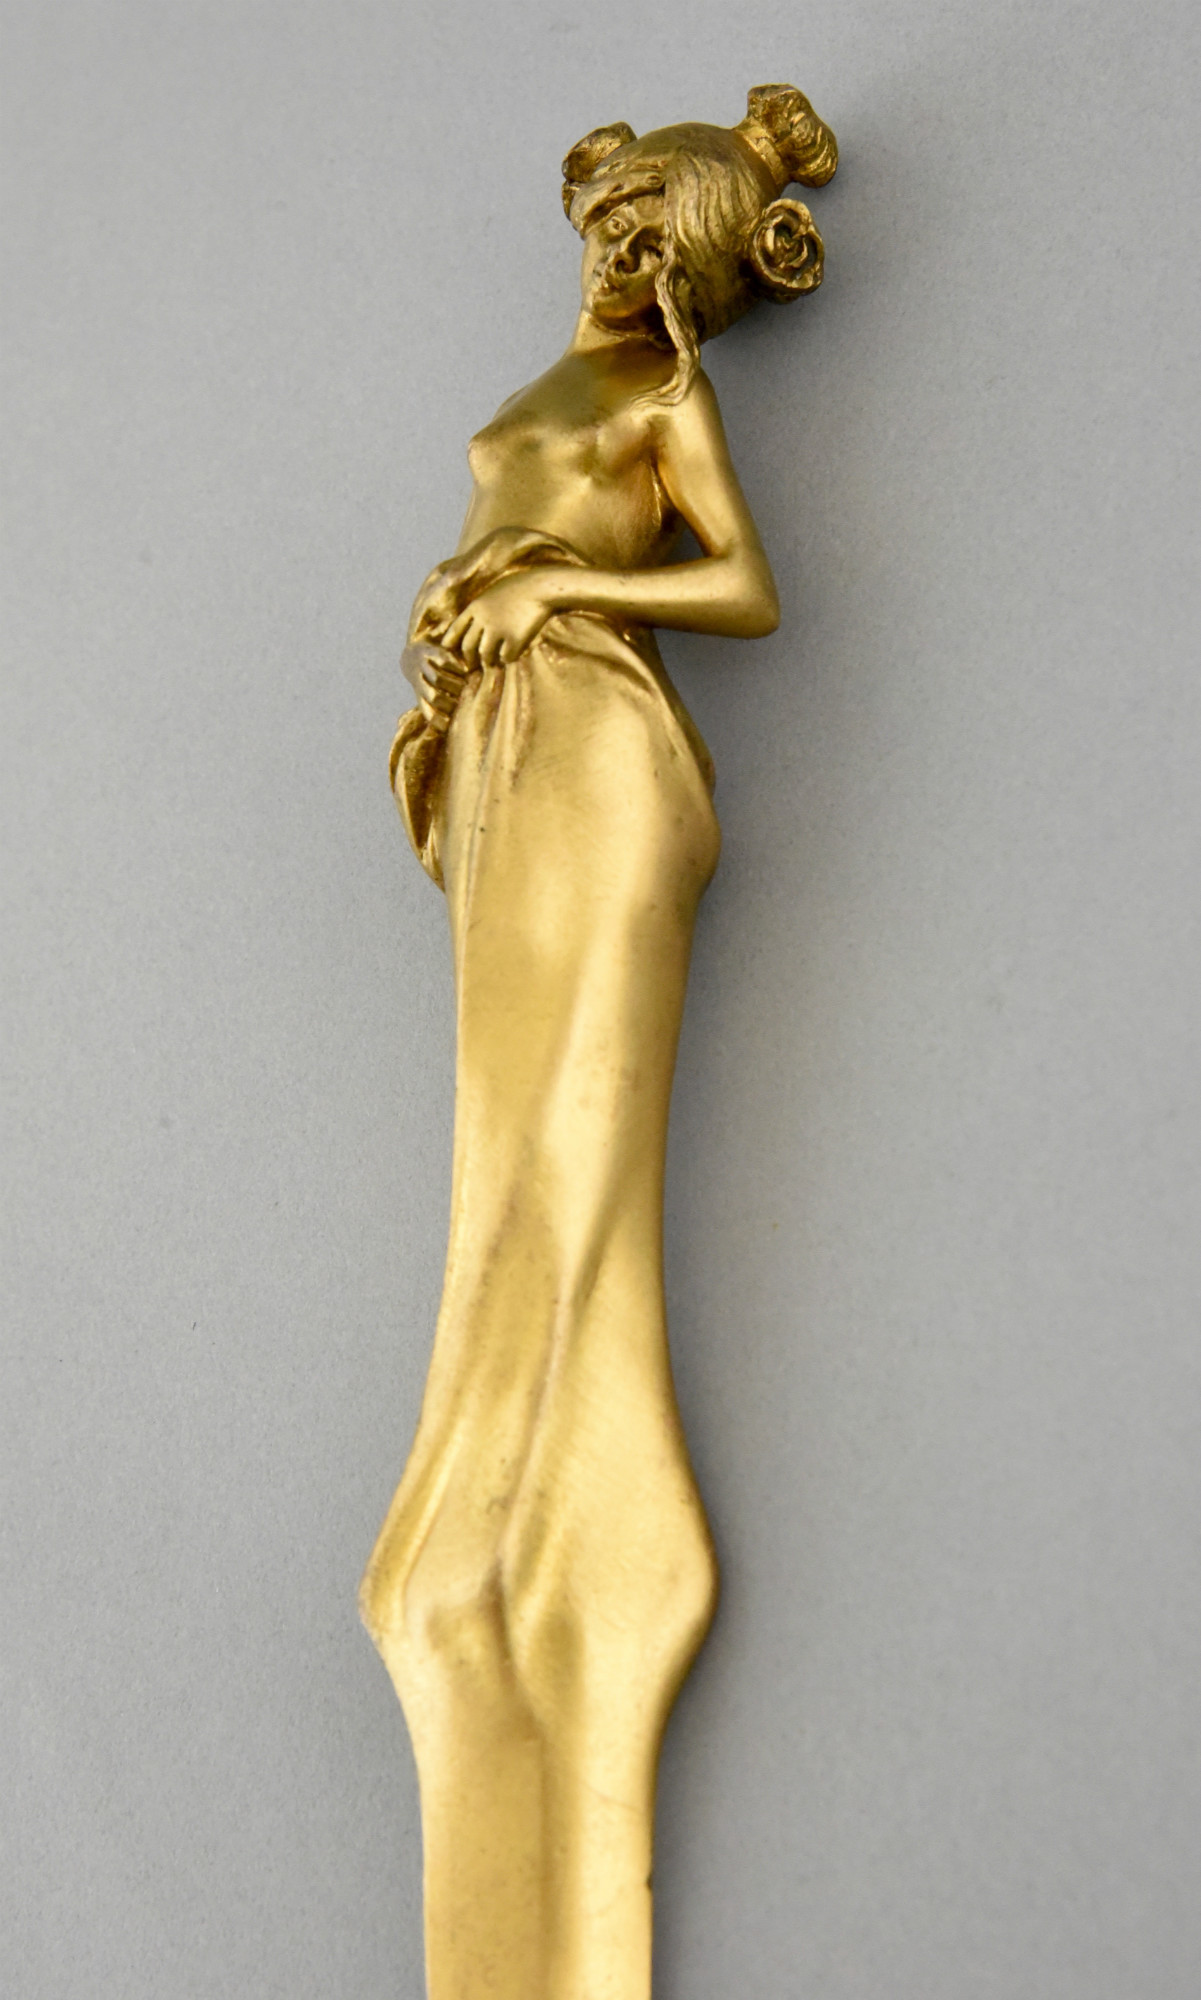 The elegance of Bronze doré (gilt bronze) is a technique that